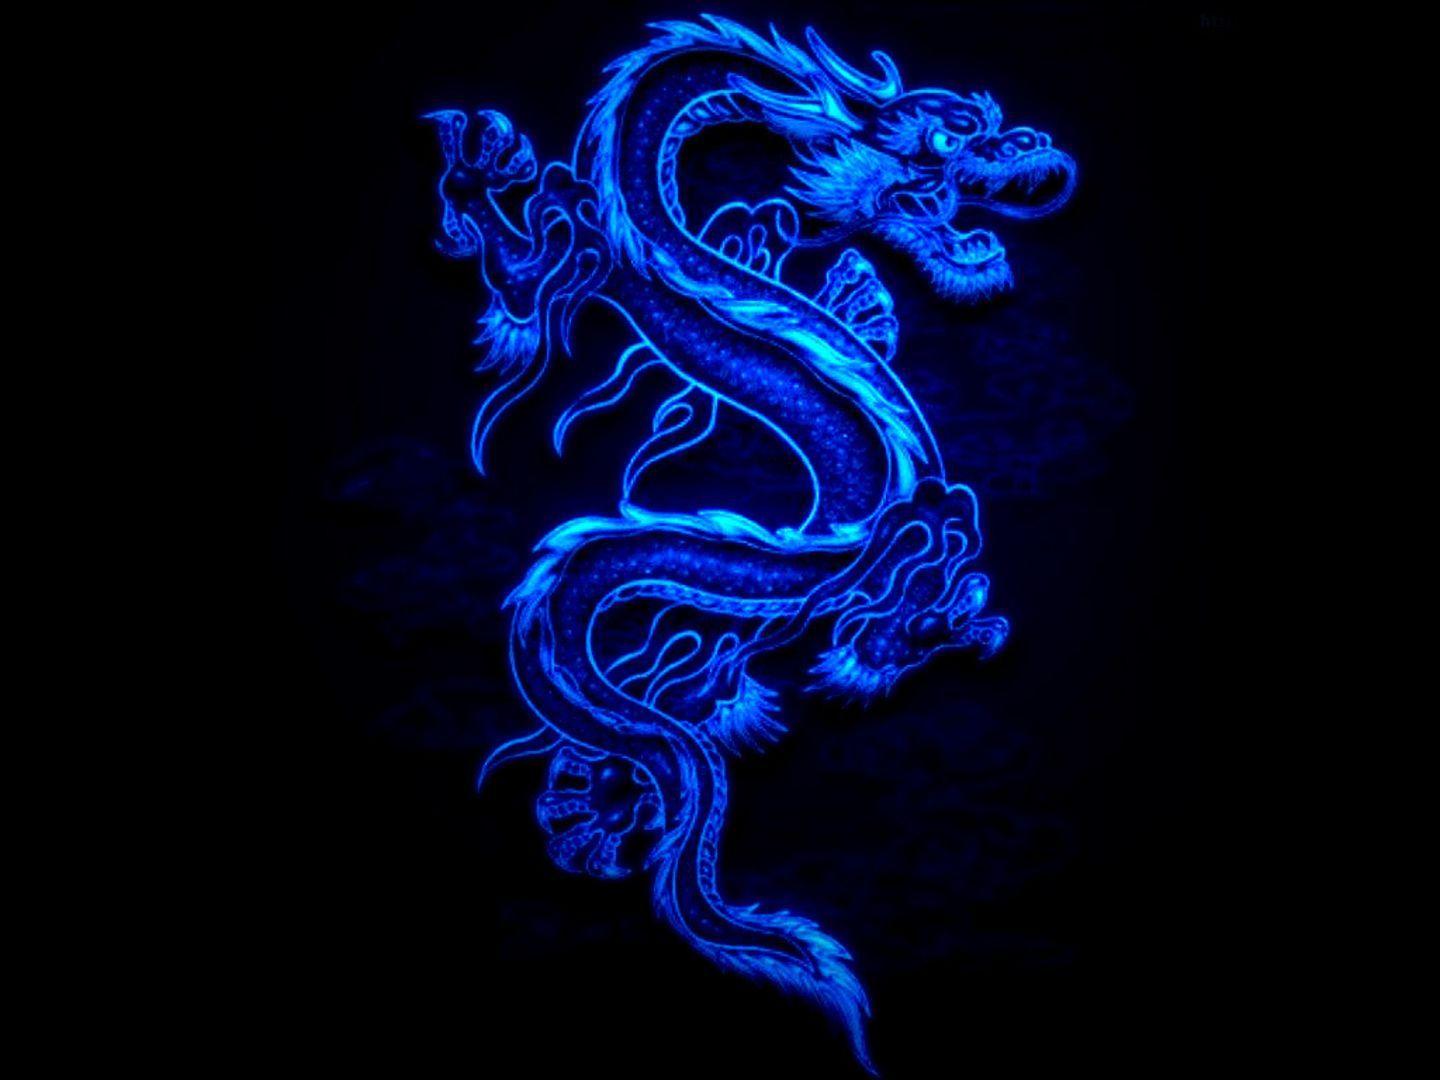 px HD Desktop Wallpaper, Blue Chinese Dragon Wallpaper. Blue dragon, Dragon picture, Dragon image